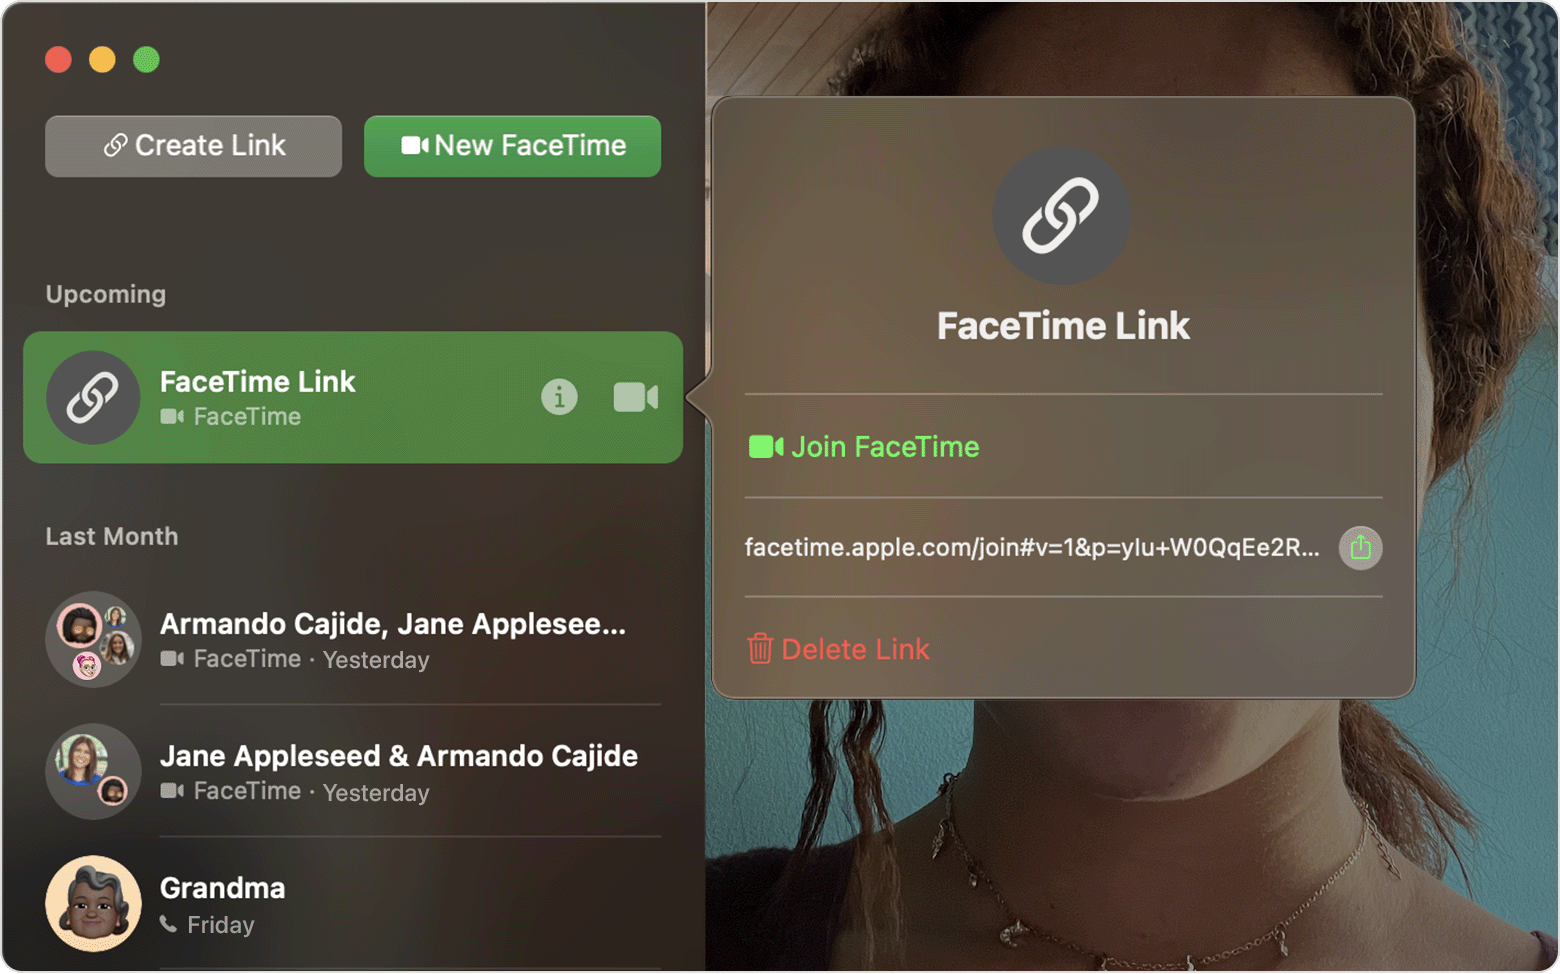 按一下「FaceTime 連結」旁邊的「資訊」按鈕後顯示的 FaceTime 視窗